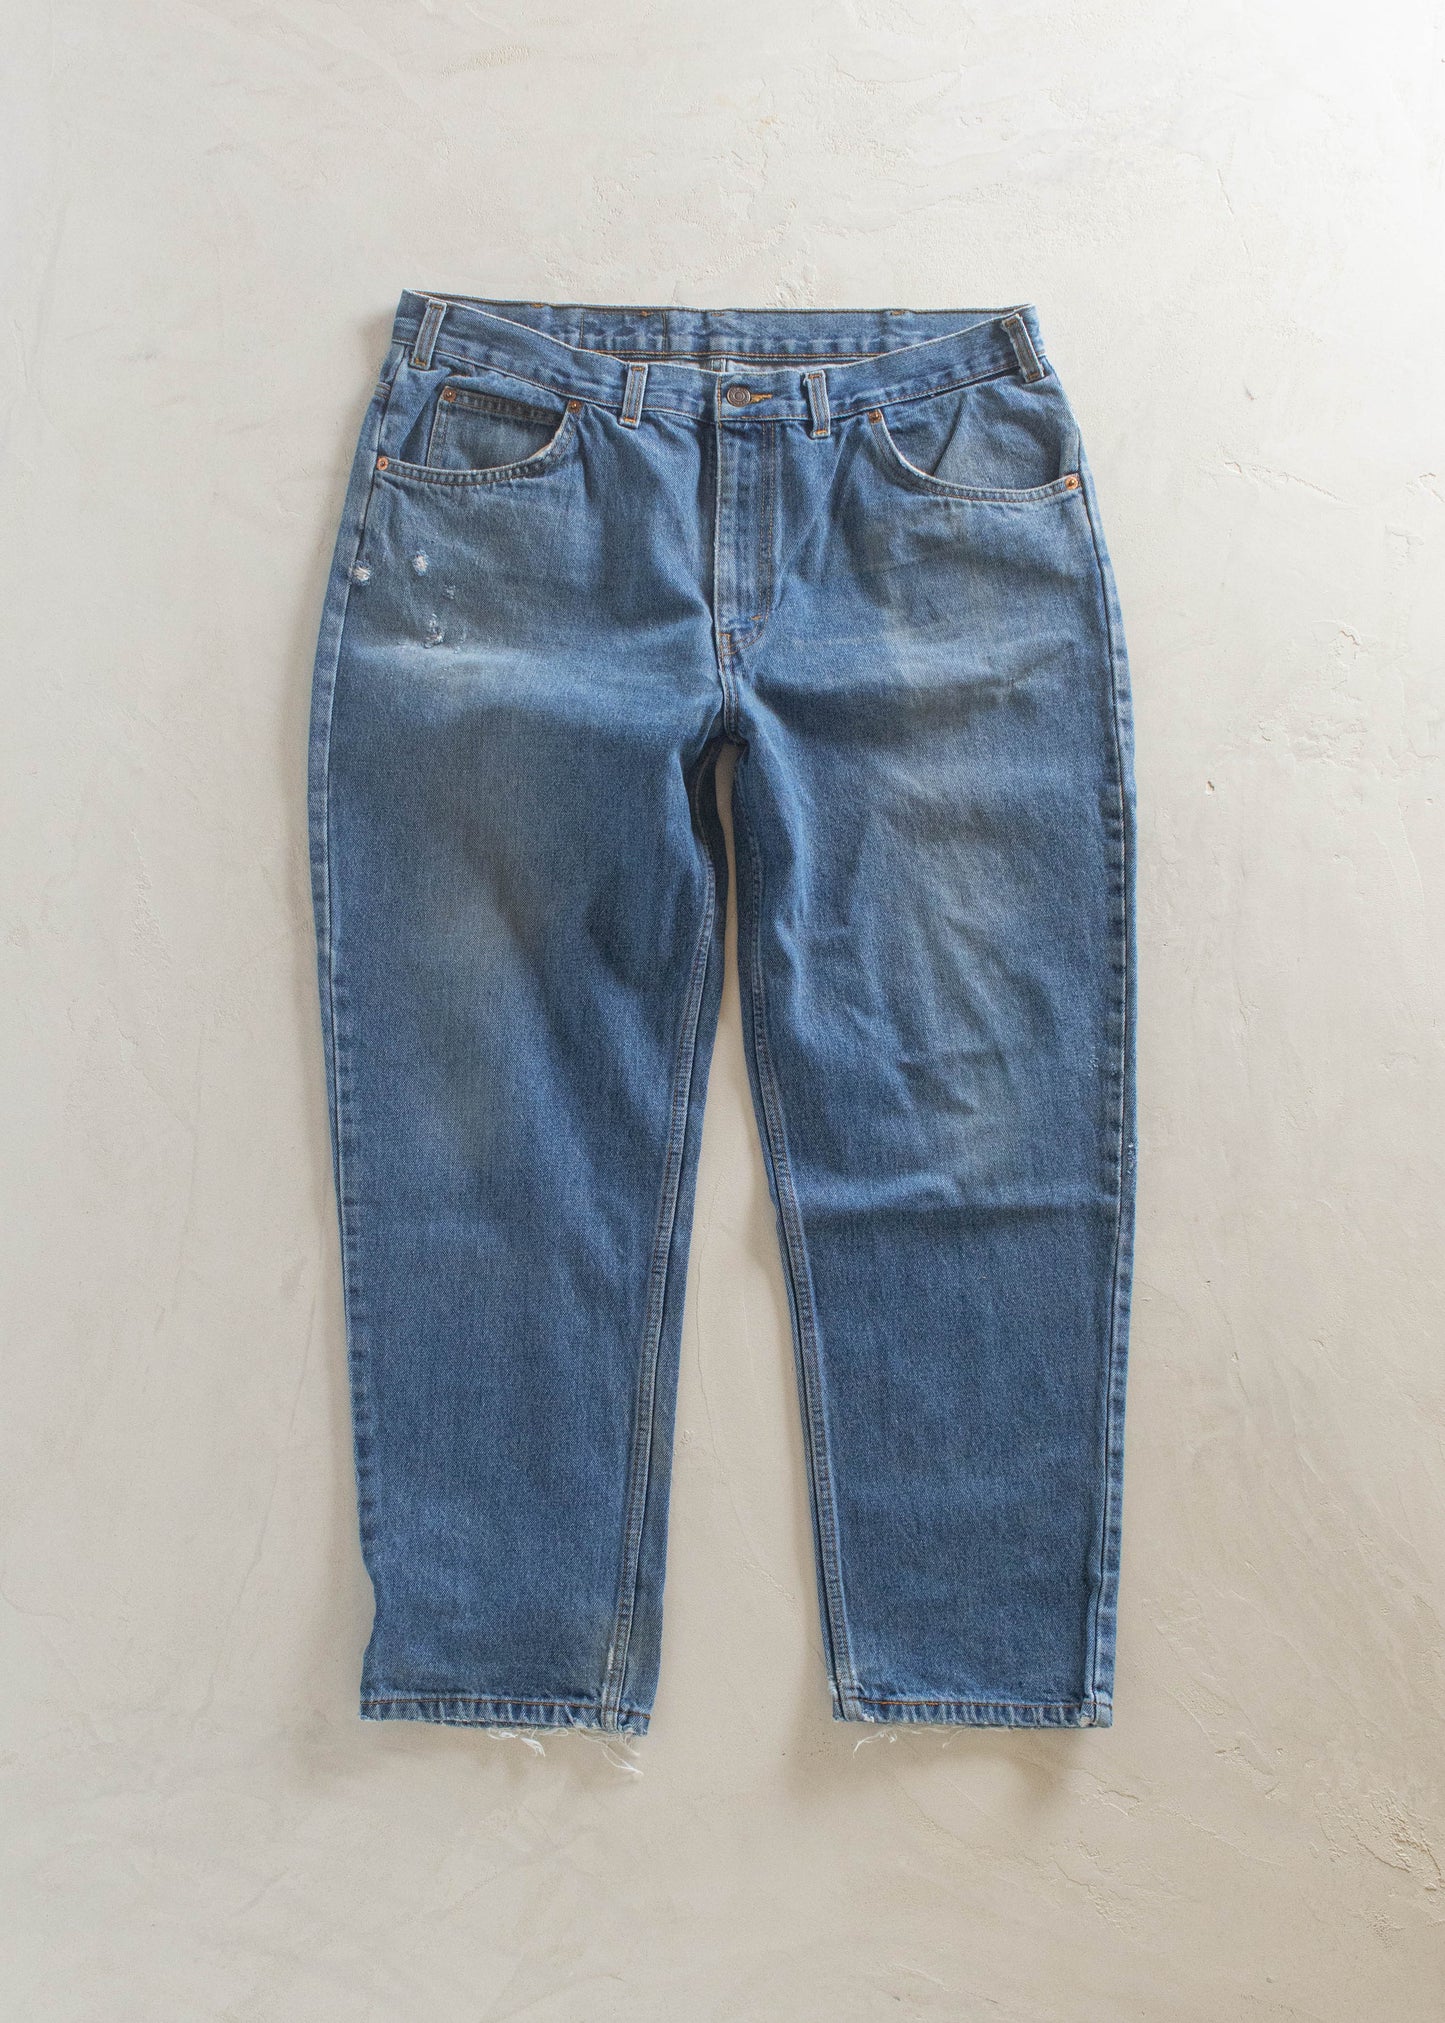 1980s Levi's Orange Tab Midwash Jeans Size Women's 36 Men's 38